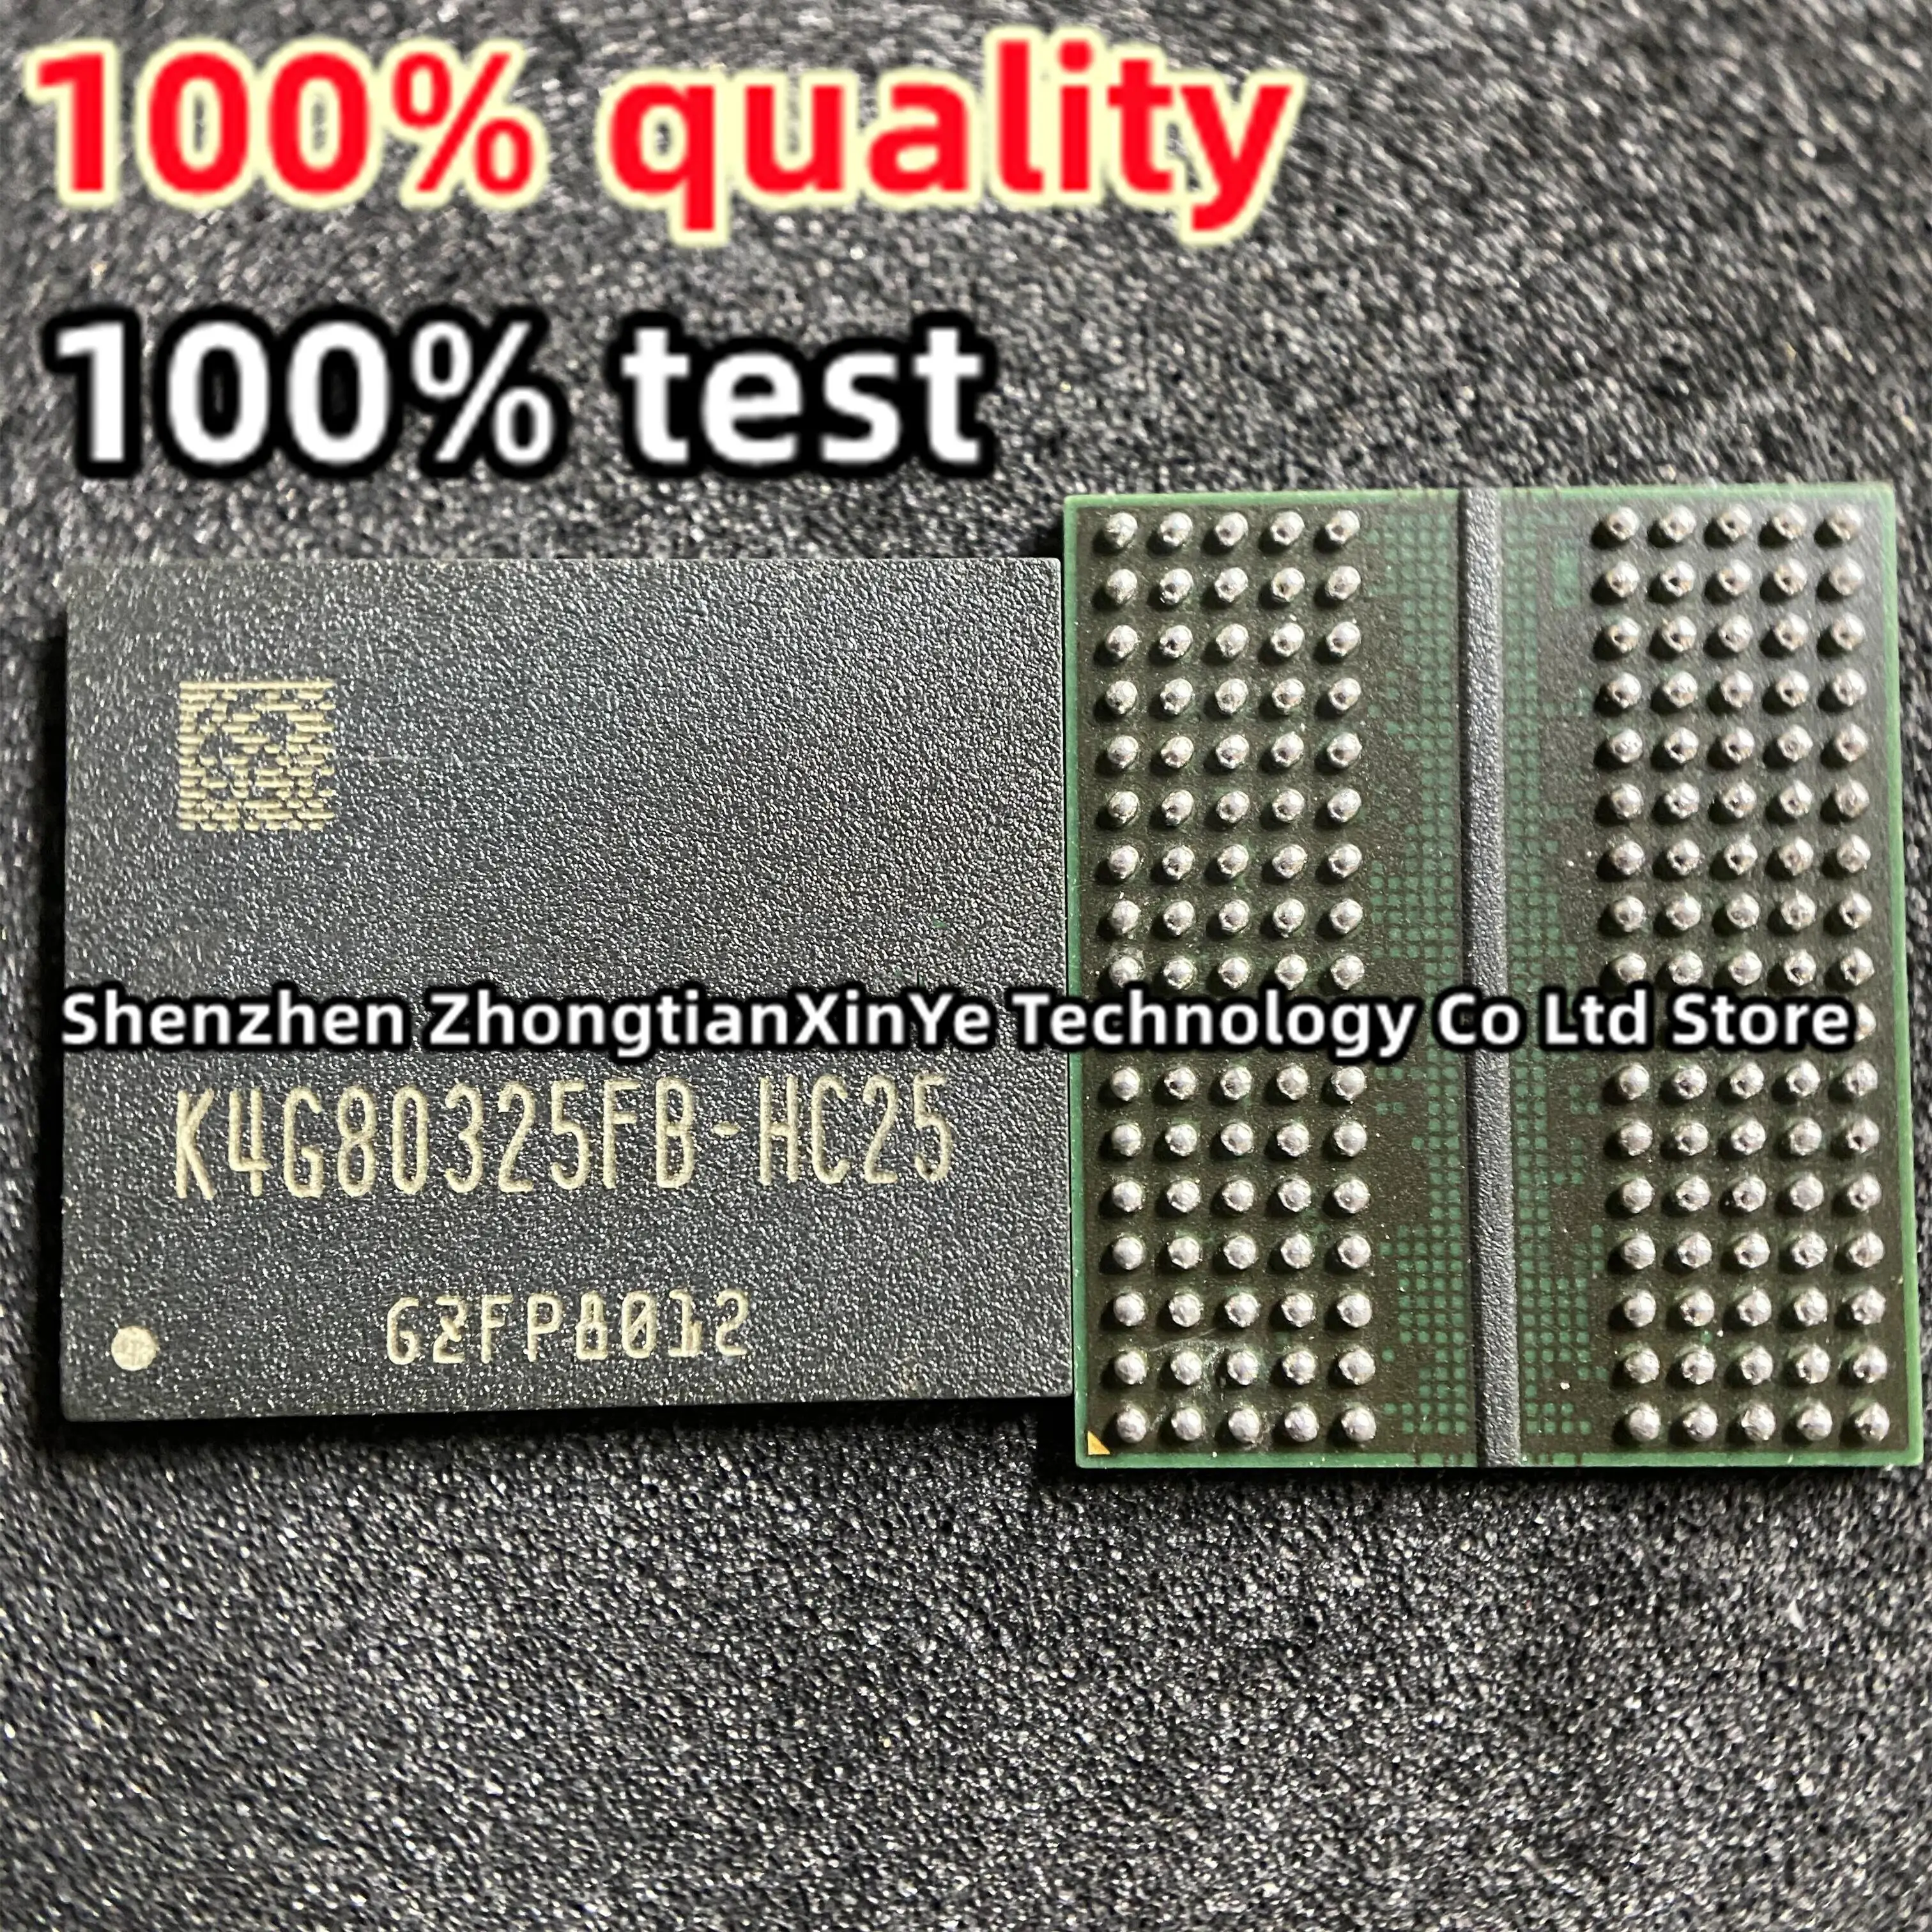 (10piece)100% test K4G80325FB-HC25 K4G80325FB-HC03  K4G80325FB-HC28 H5GQ8H24MJR-R0C H5GQ8H24MJR-R4C H5GQ8H24MJR-R2C BGA Chipset